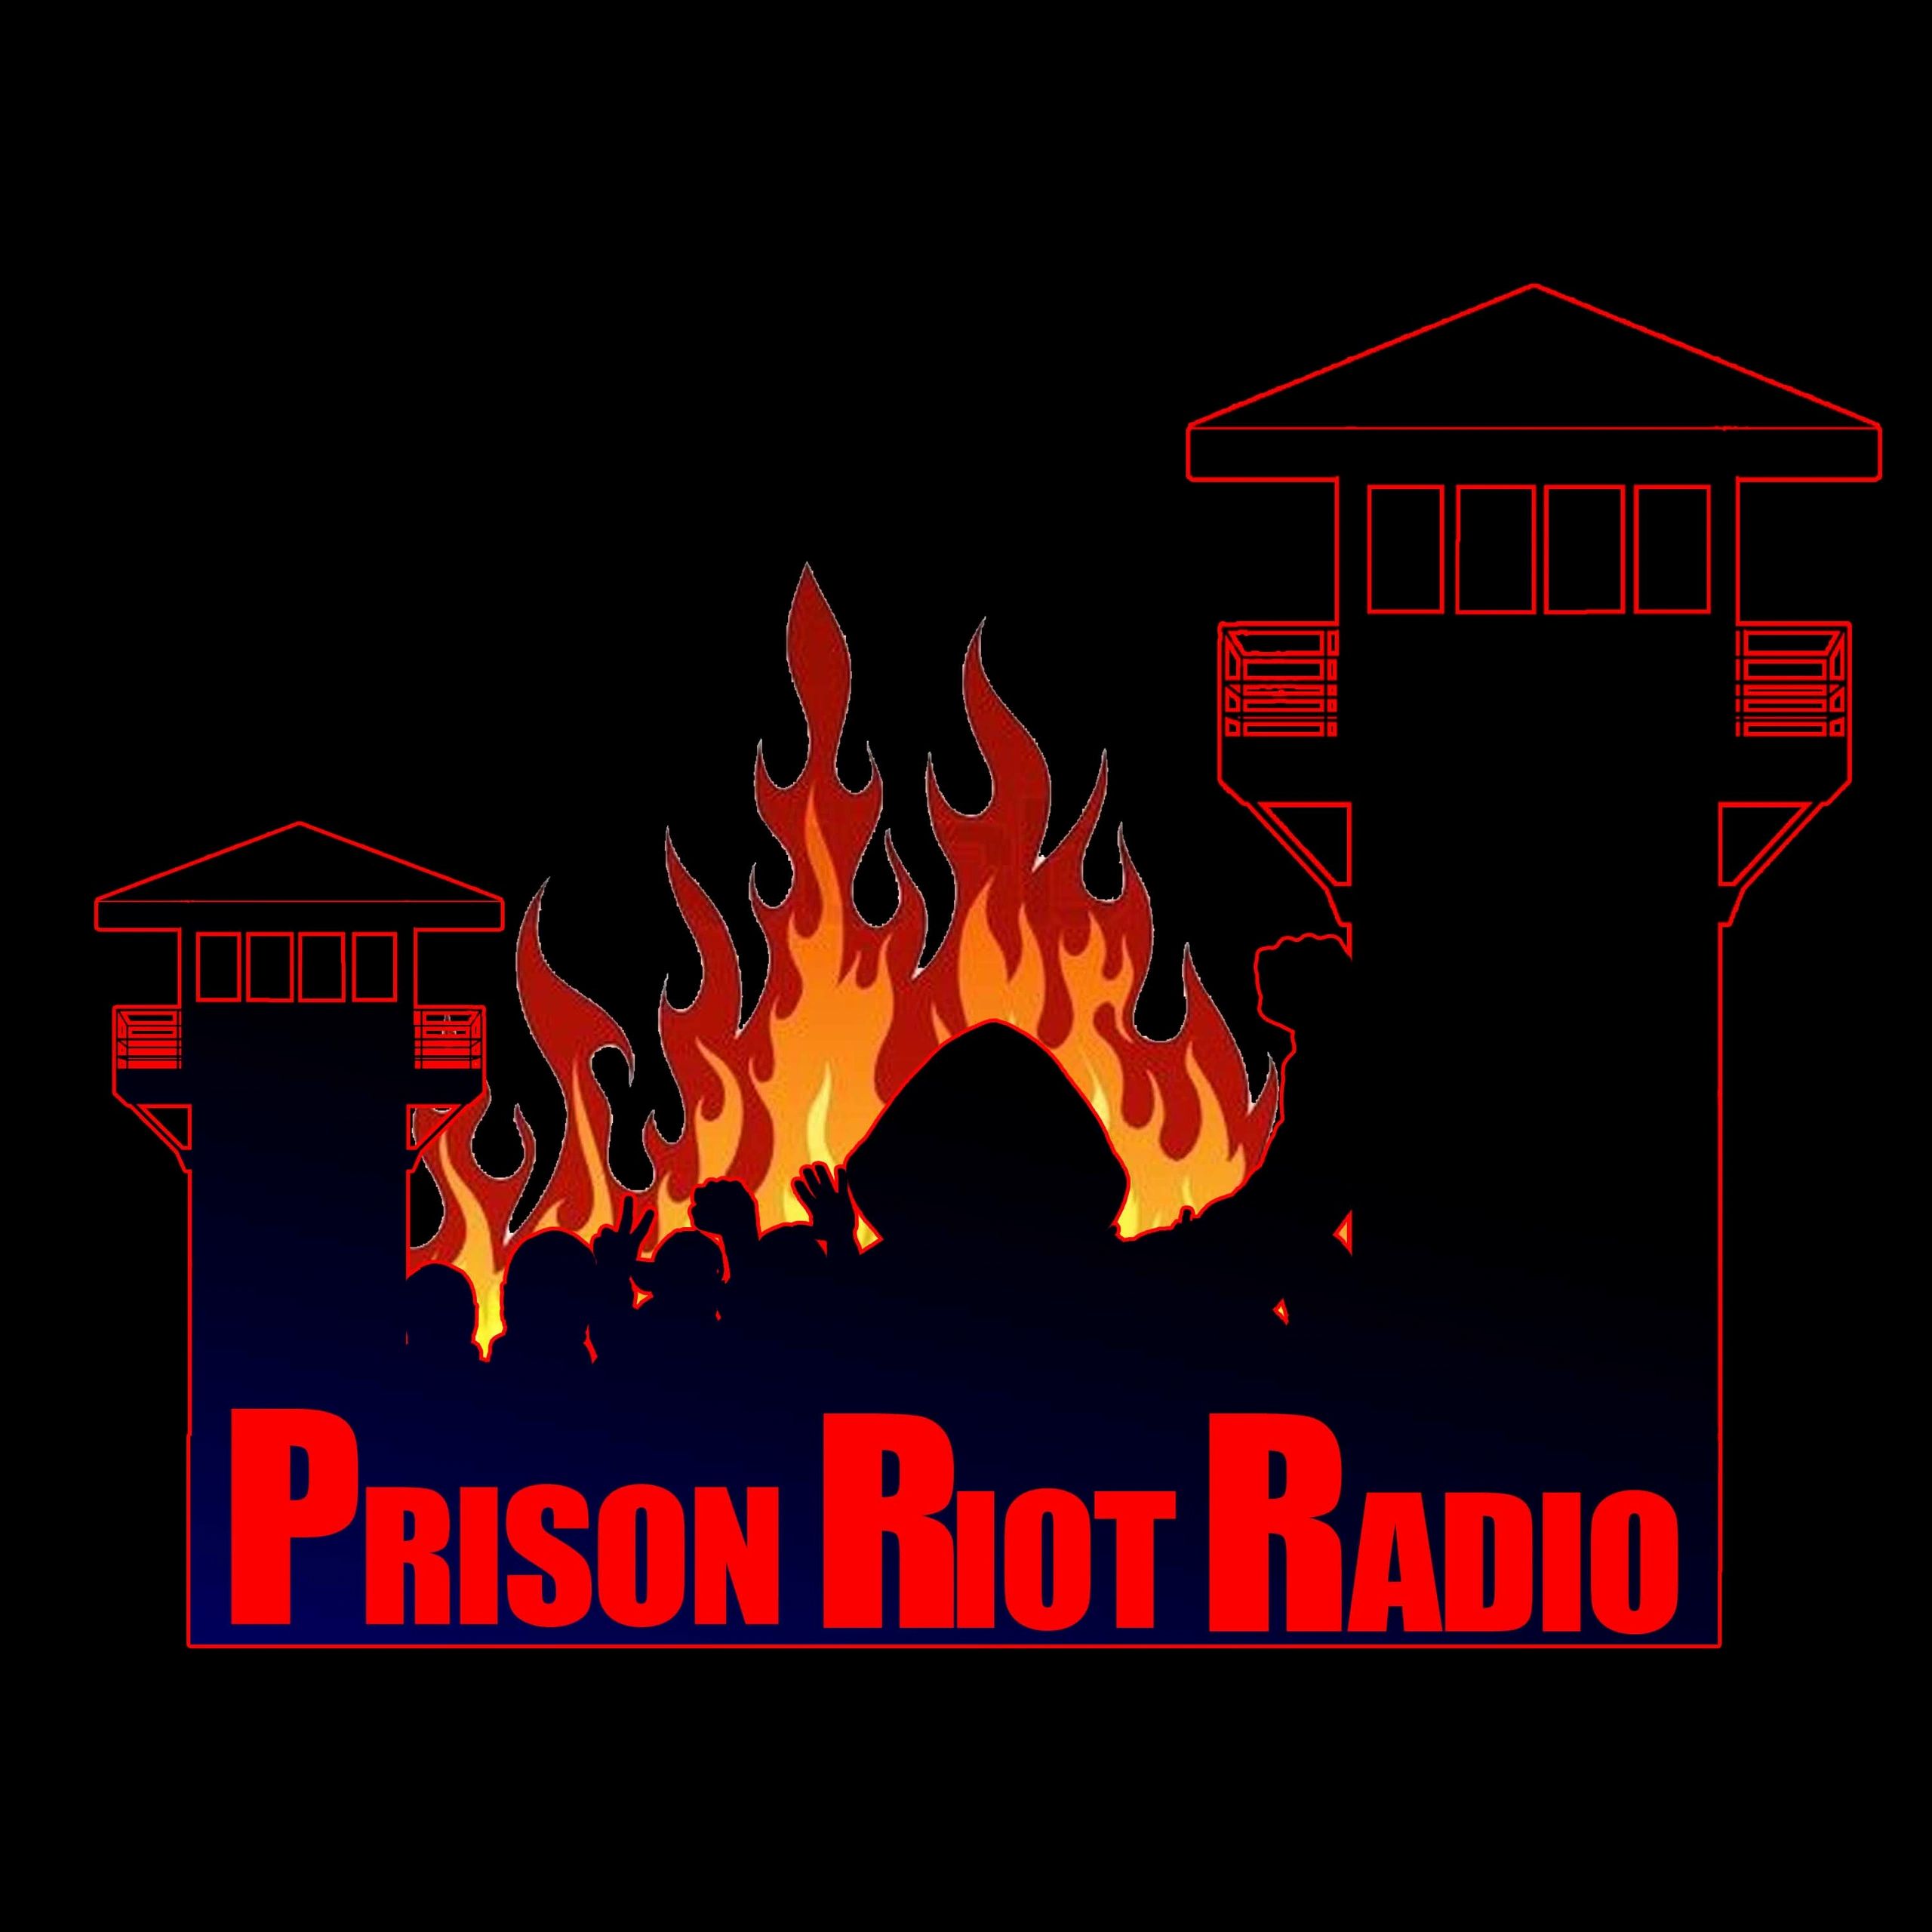 Prison Riot Radio